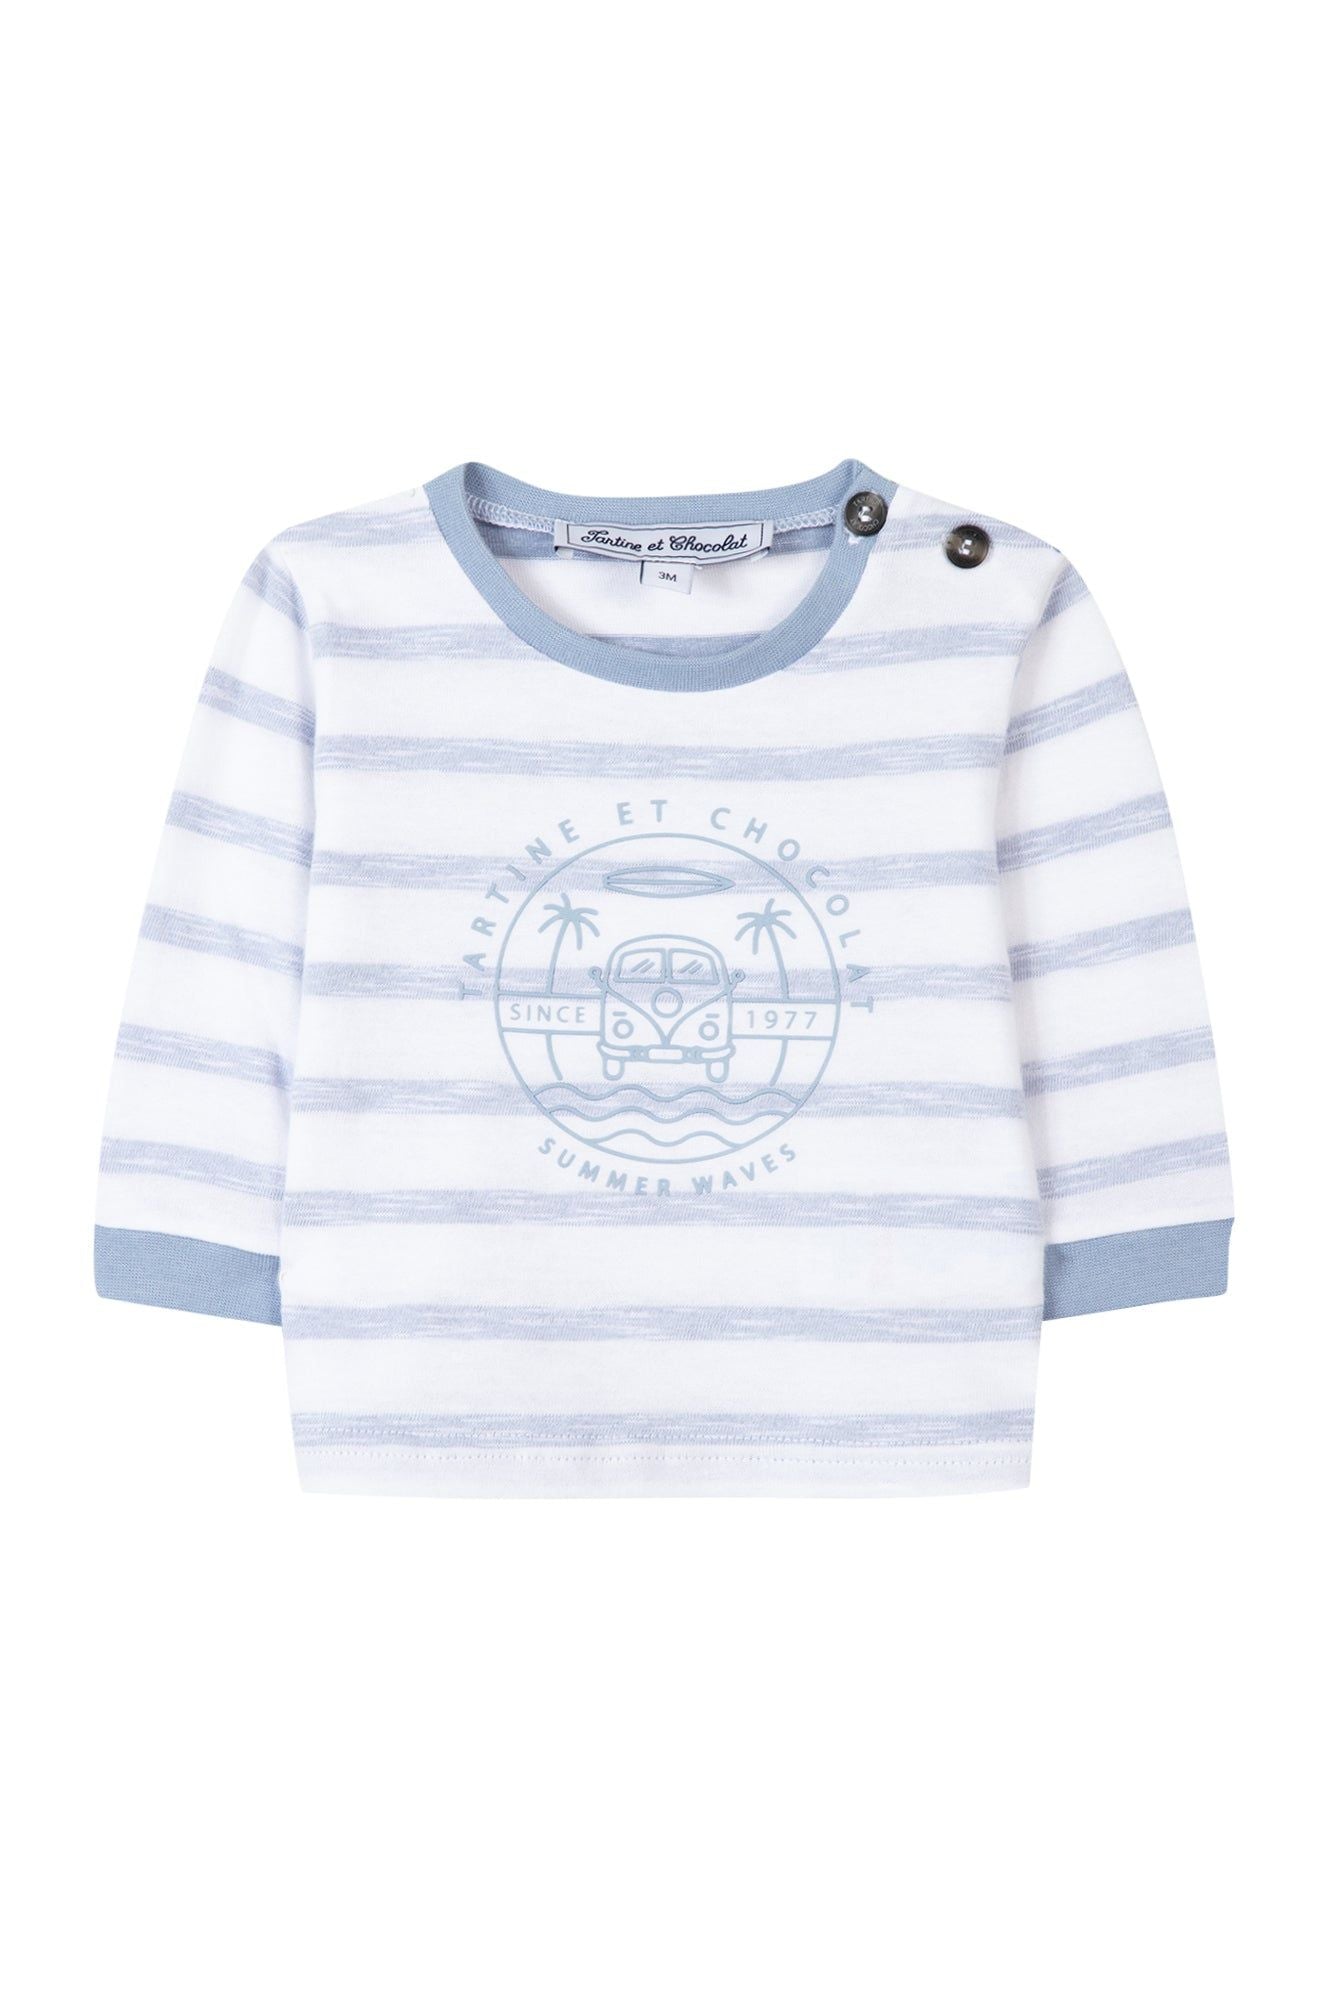 T-shirt TC Club à manches longues rayé baby boy - Cobalt